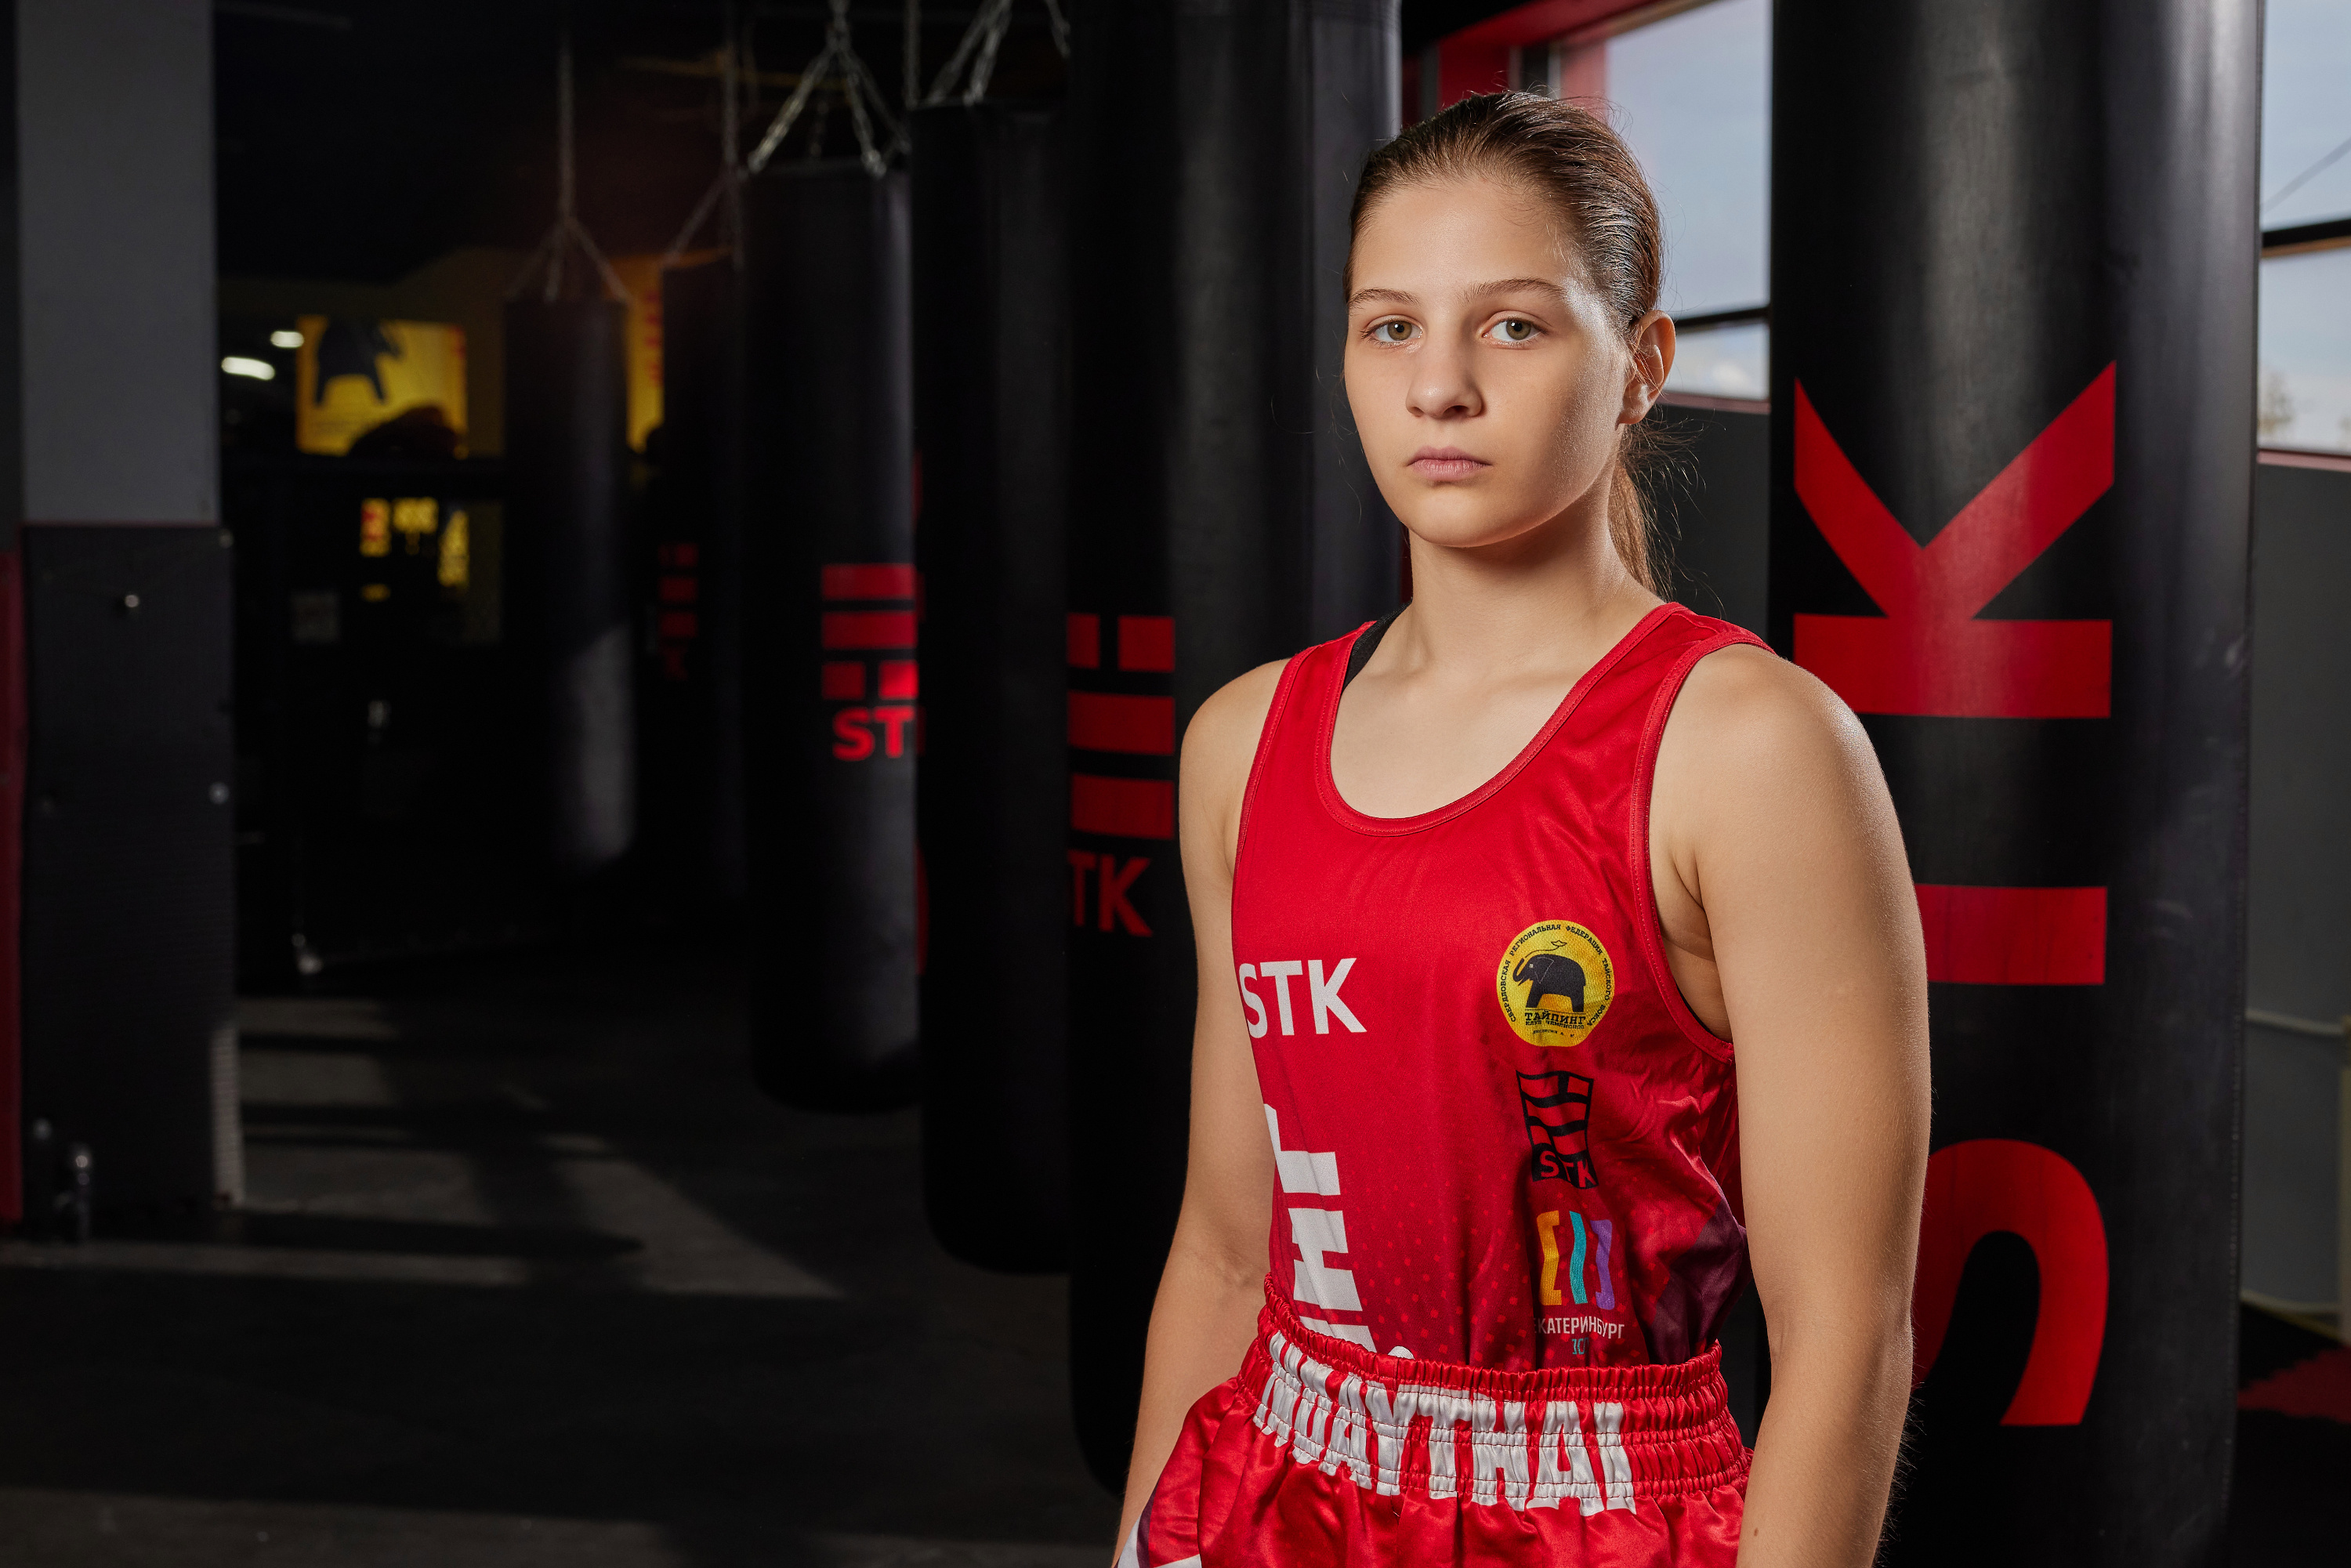 Софья Чечеткина — двукратная чемпионка мира и Европы по тайскому боксу